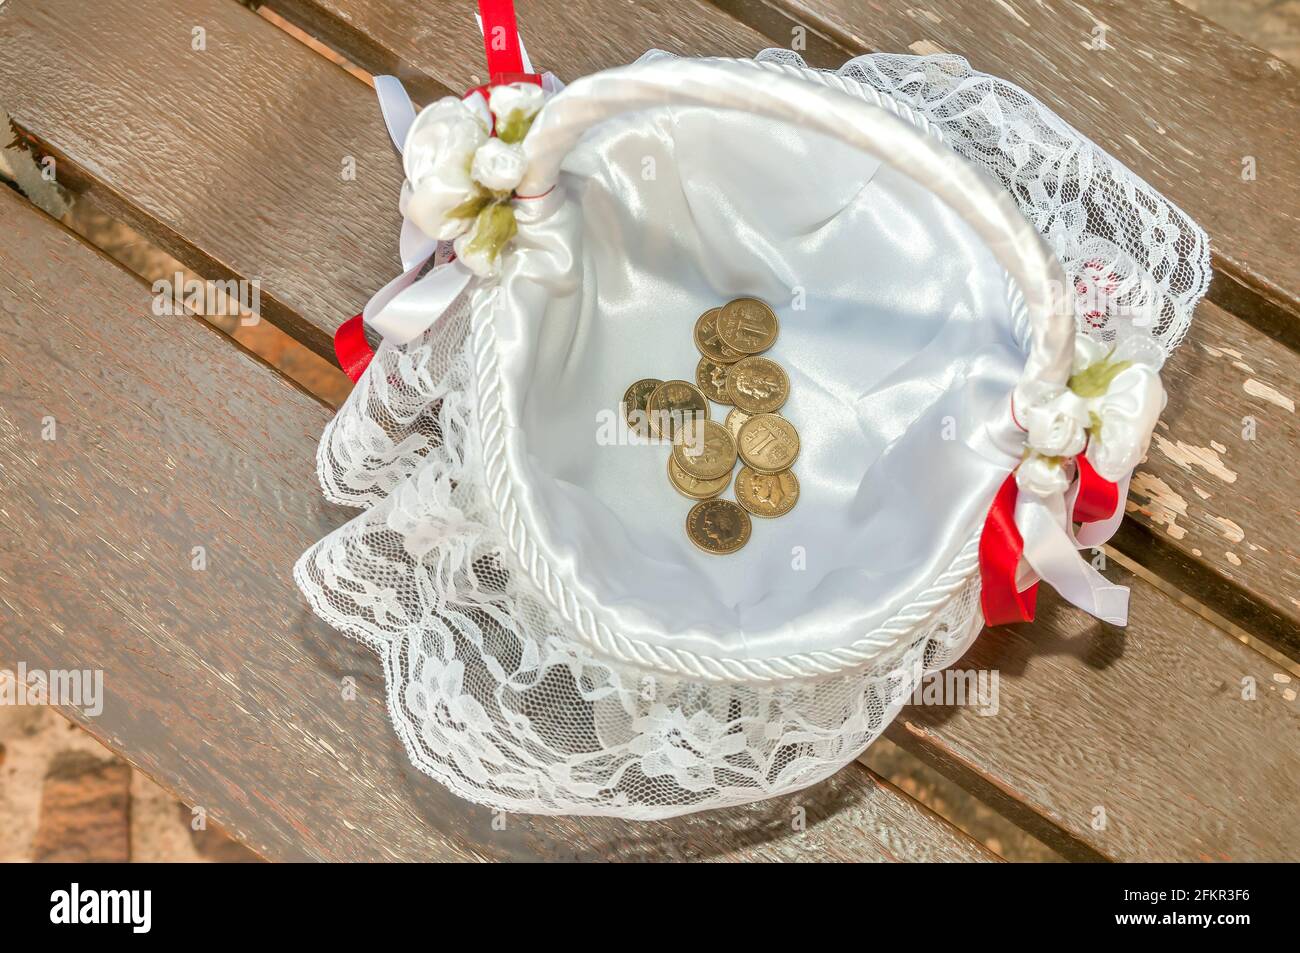 Arras, Münzen, die symbolisch in einer Hochzeitszeremonie verwendet werden, die in einem Korb, Pesetas, platziert wird. Stockfoto